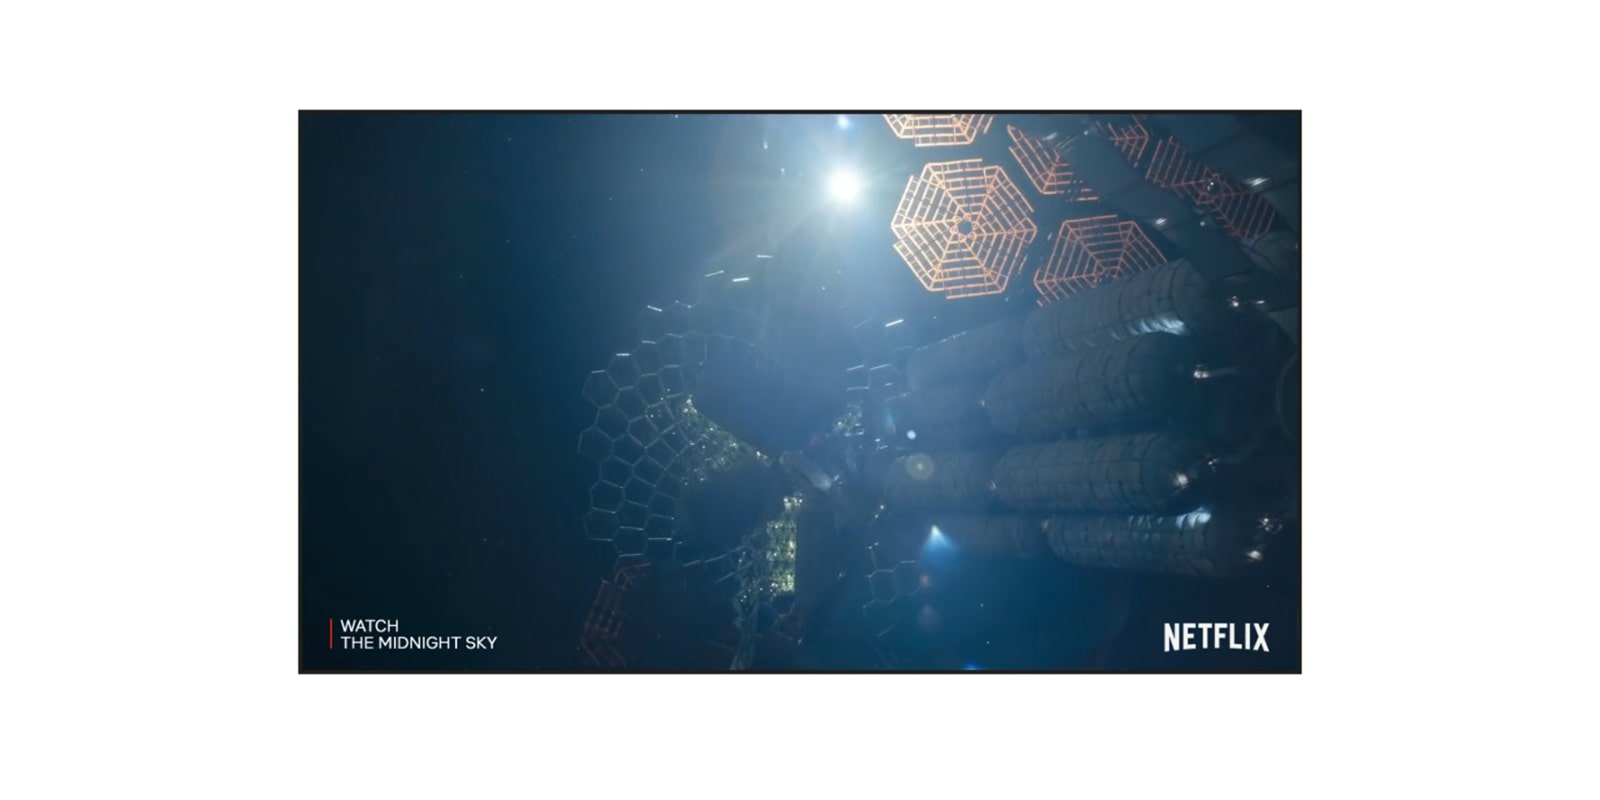 Екран телевізора з трейлером The Midnight Sky на Netflix (відтворення відео).